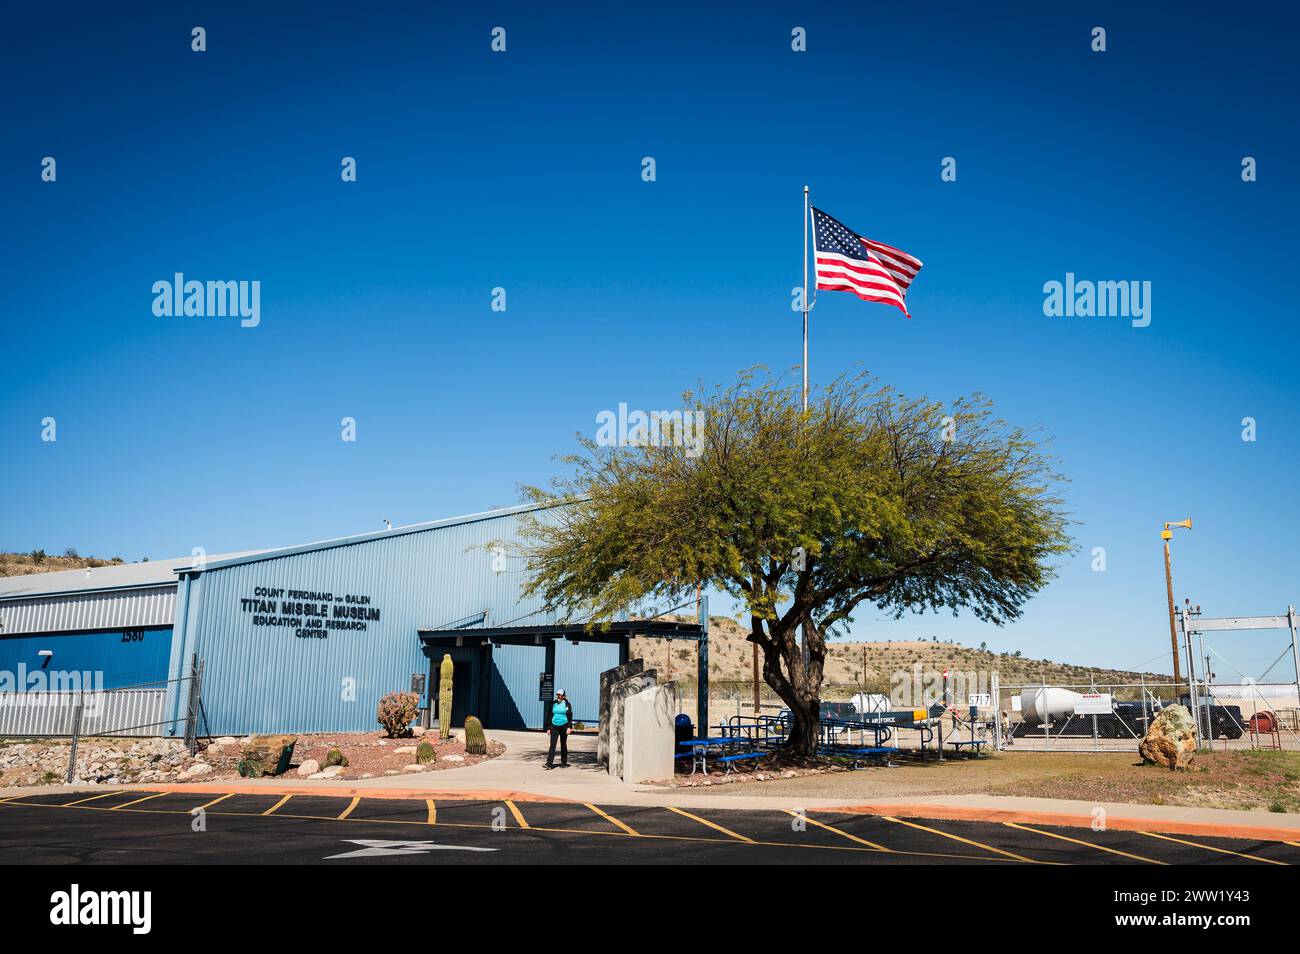 Il Titan Missile Museum, che ospita un missile nucleare ICBM Titan II. A sud di Tucson, Arizona, Stati Uniti. Foto Stock